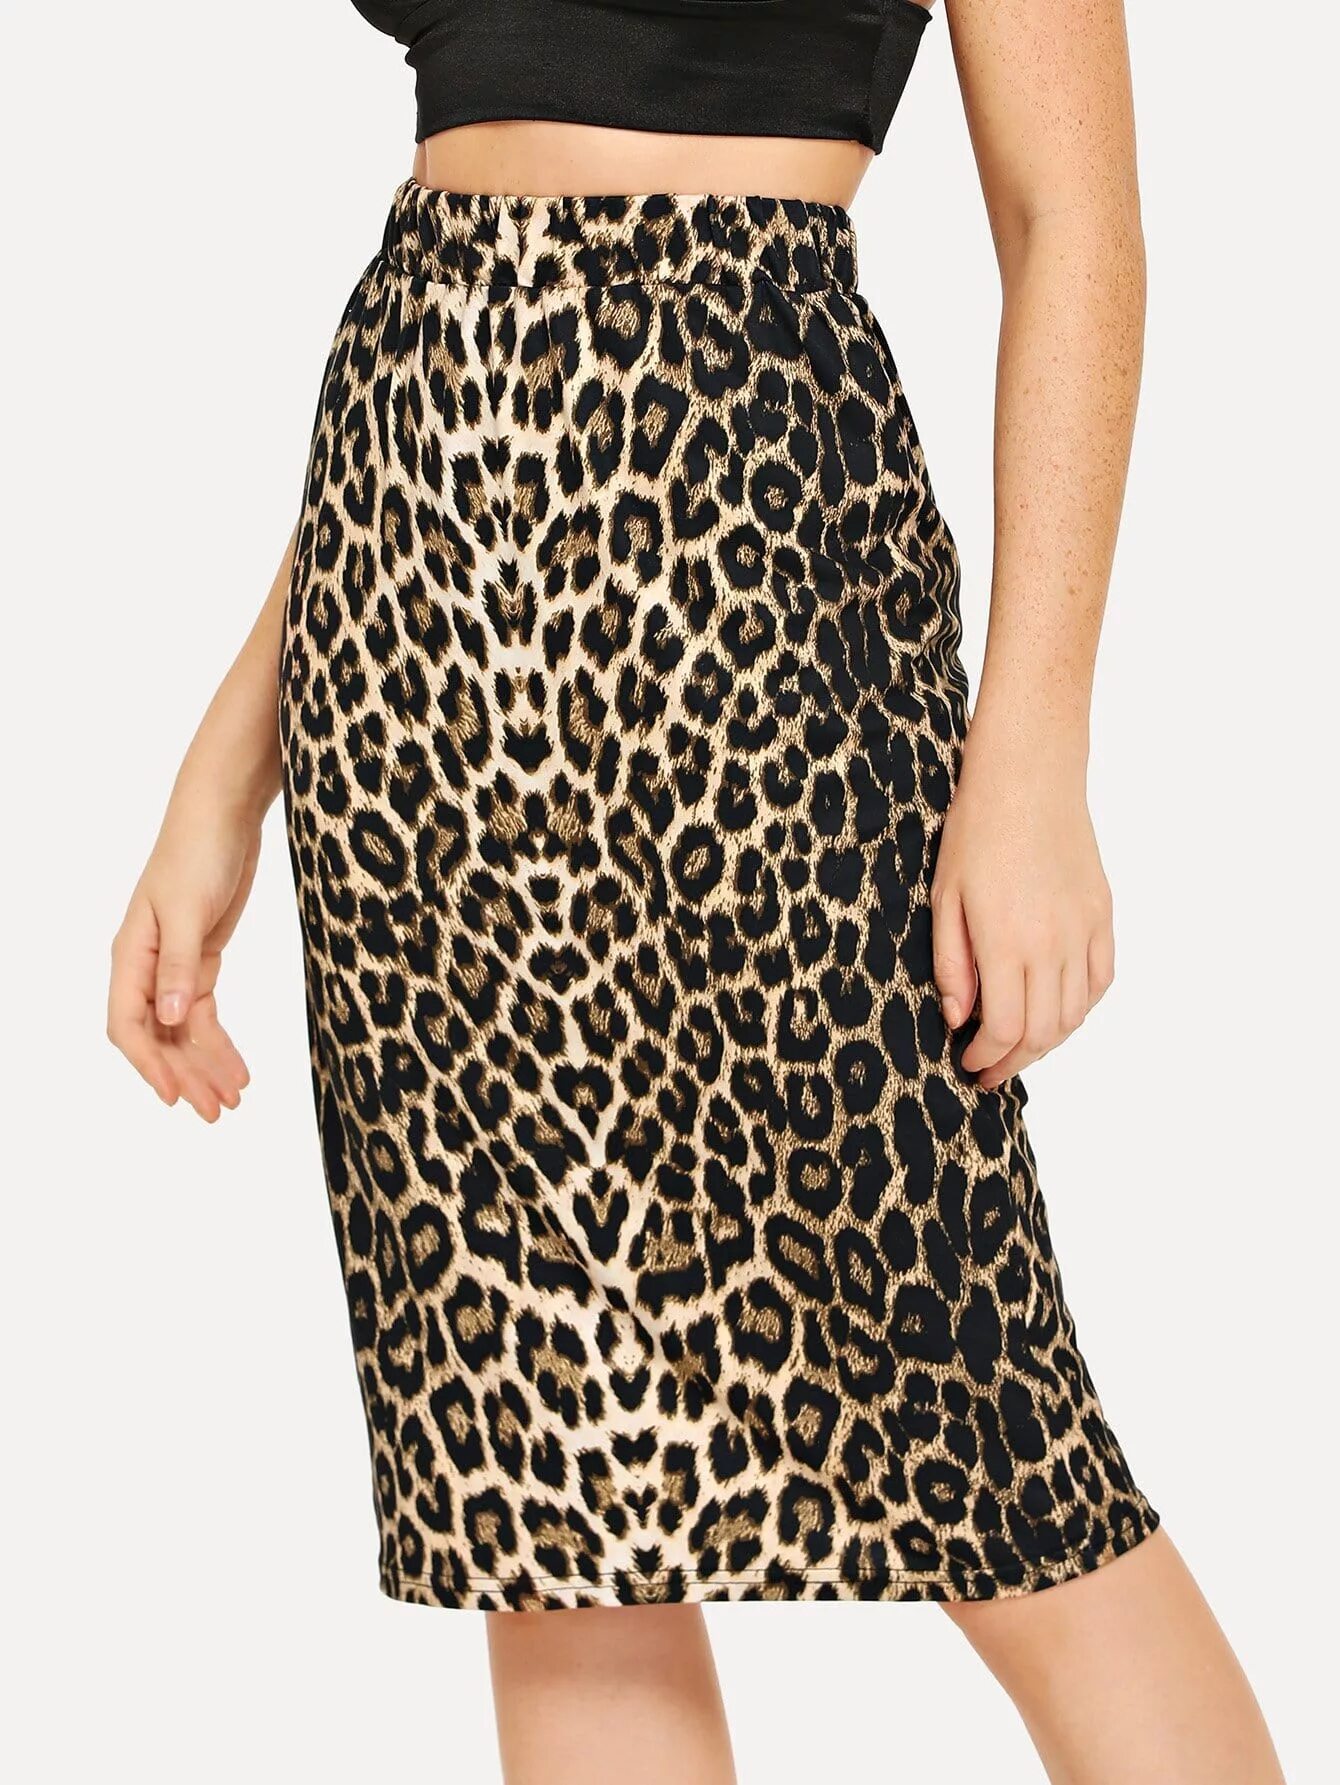 Юбка Шейн леопард макси. Шайн леопардовая юбка. Леопардовая юбка Koton кожаная. Юбка леопардовая Шеин.